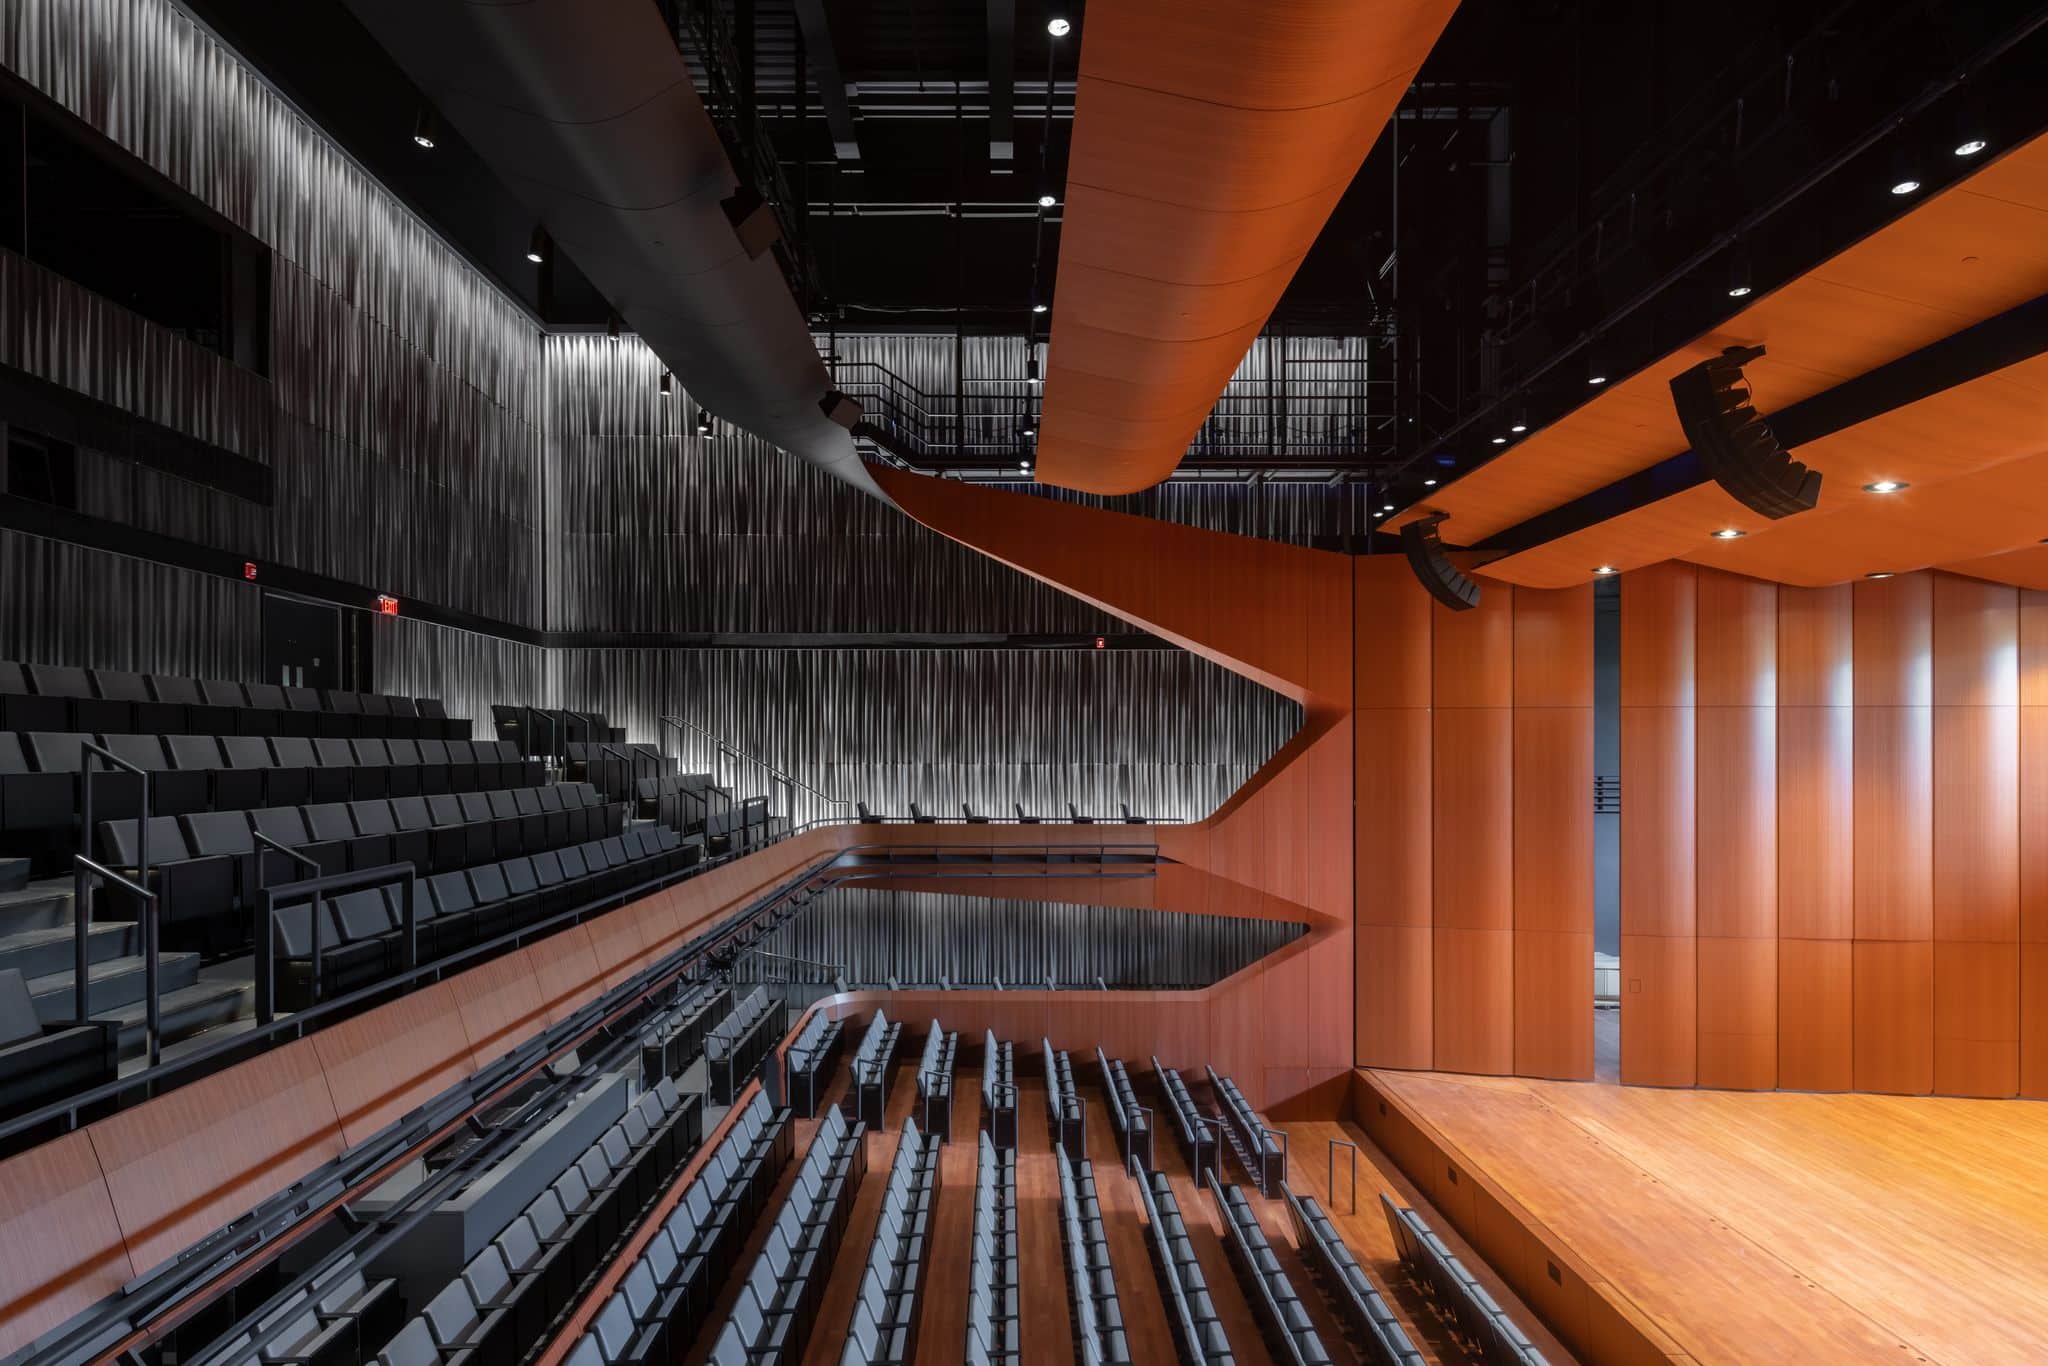 Bestuhlung des Luth-Konzertsaals und maßgefertigte Diffusionsplatten aus Beton, Foto: Iwan Baan, Courtesy of Diller Scofidio + Renfro